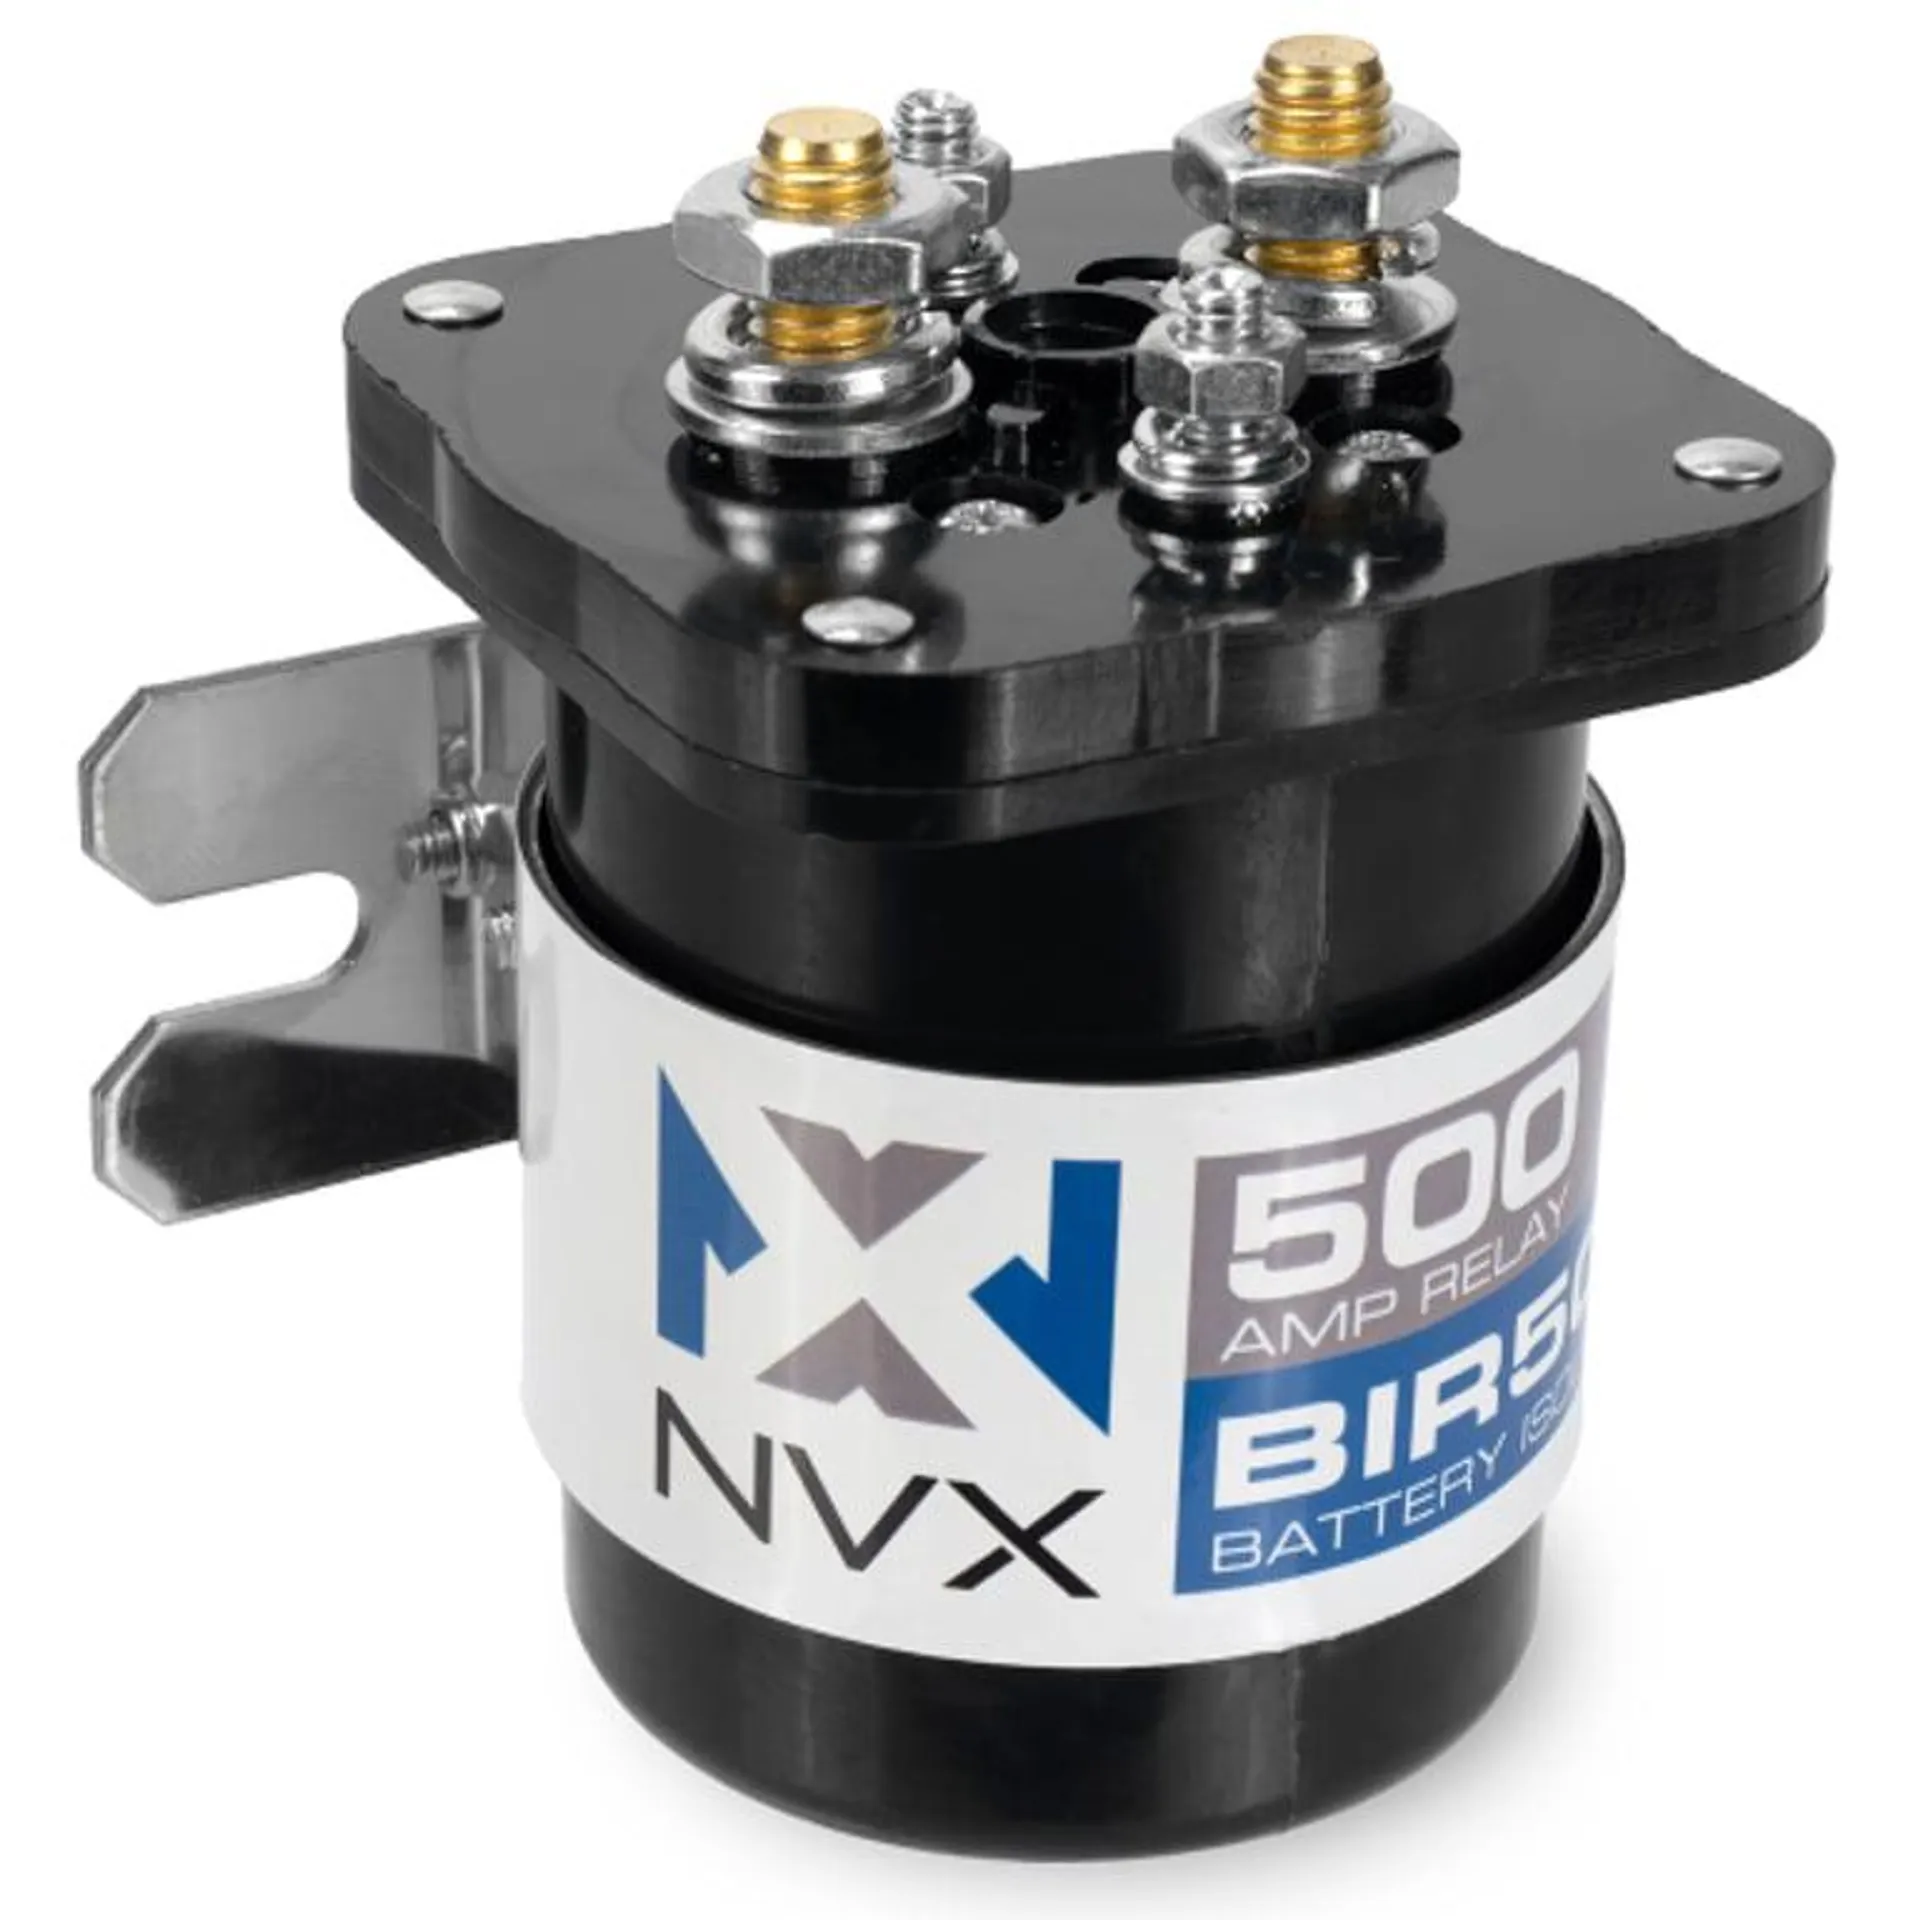 NVX BIR500